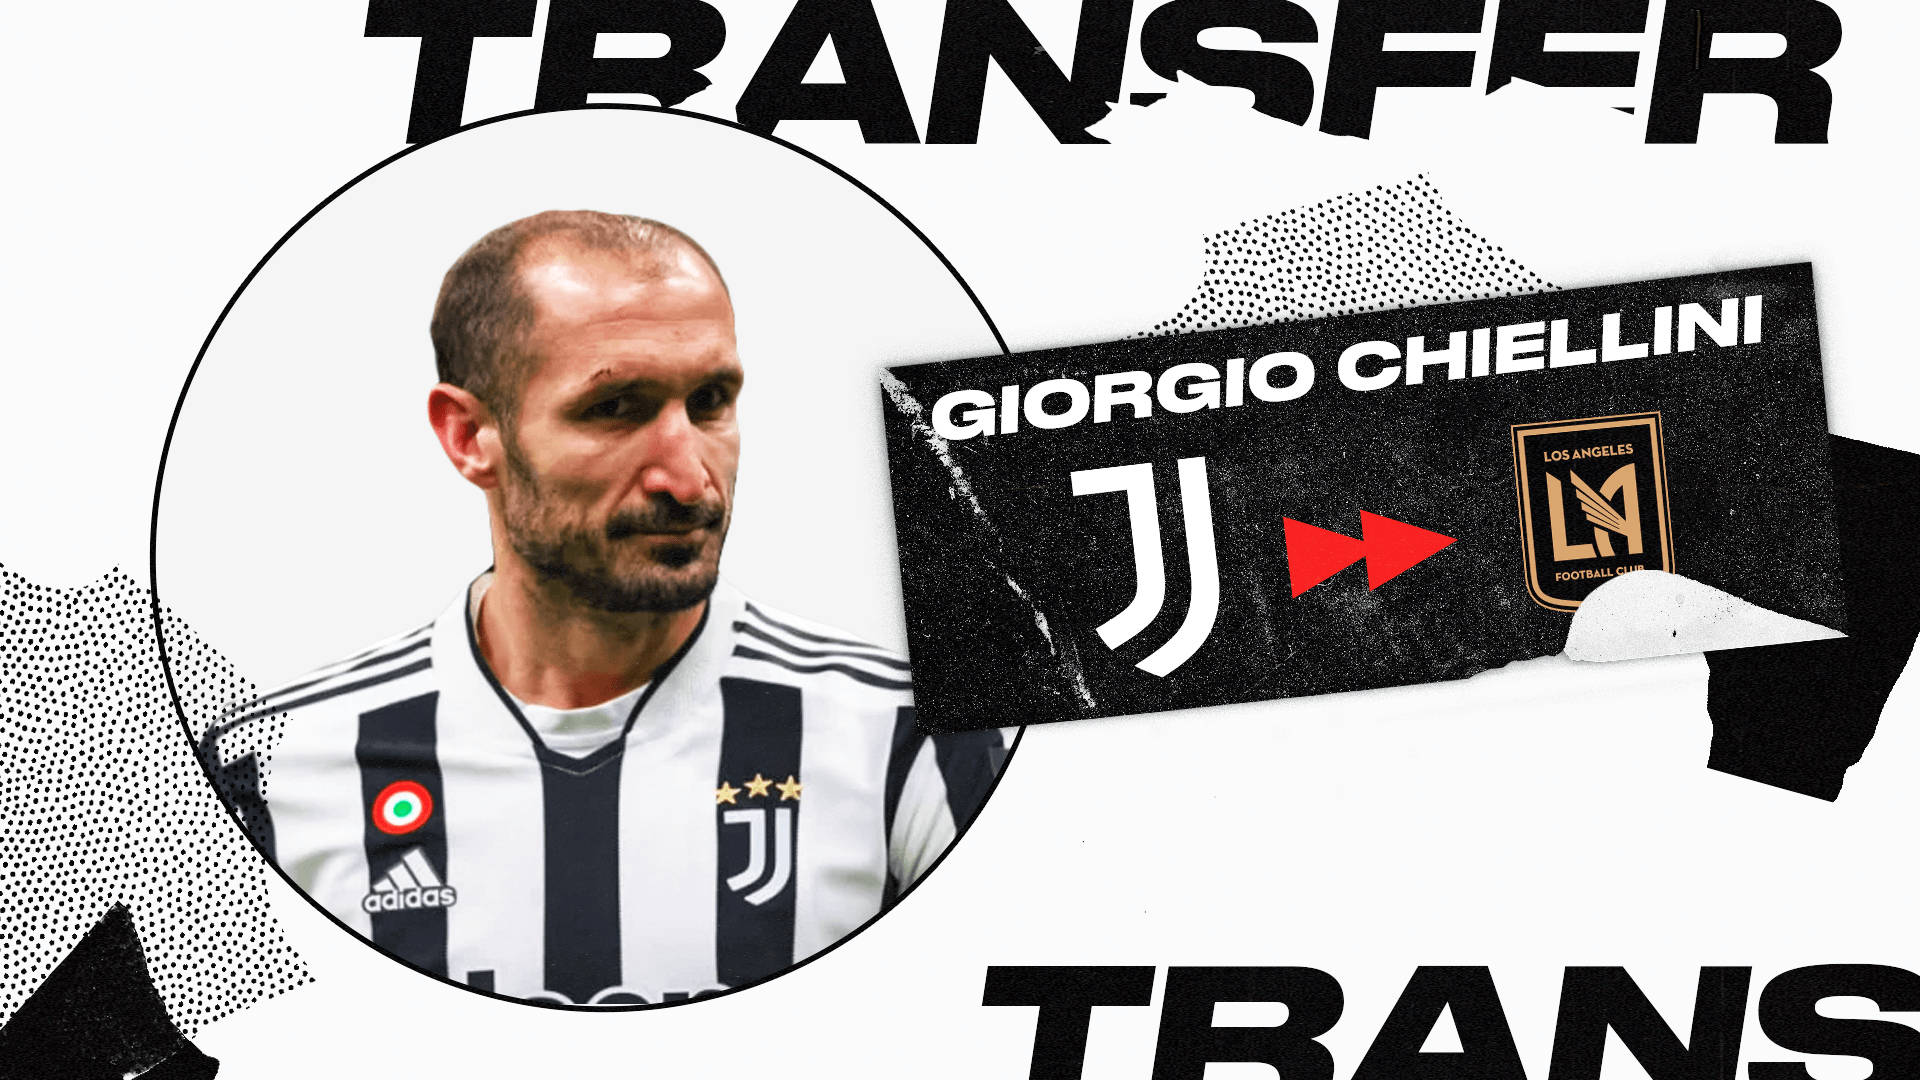 Giorgiochiellini, Transferencia Al Equipo De La Major Soccer League. Fondo de pantalla